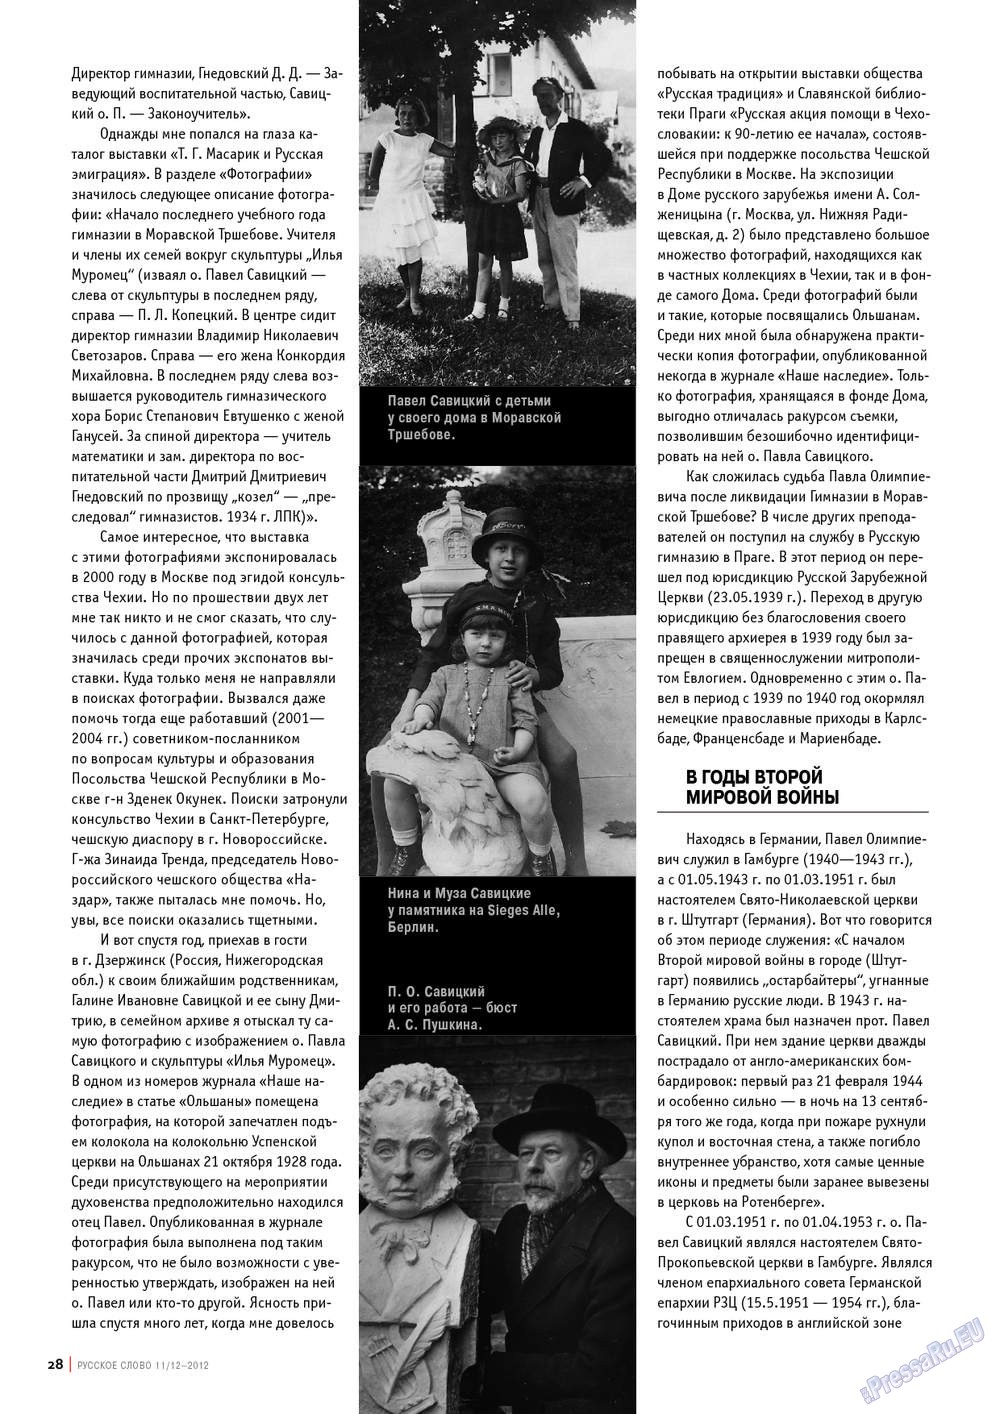 Русское слово (журнал). 2012 год, номер 11, стр. 28